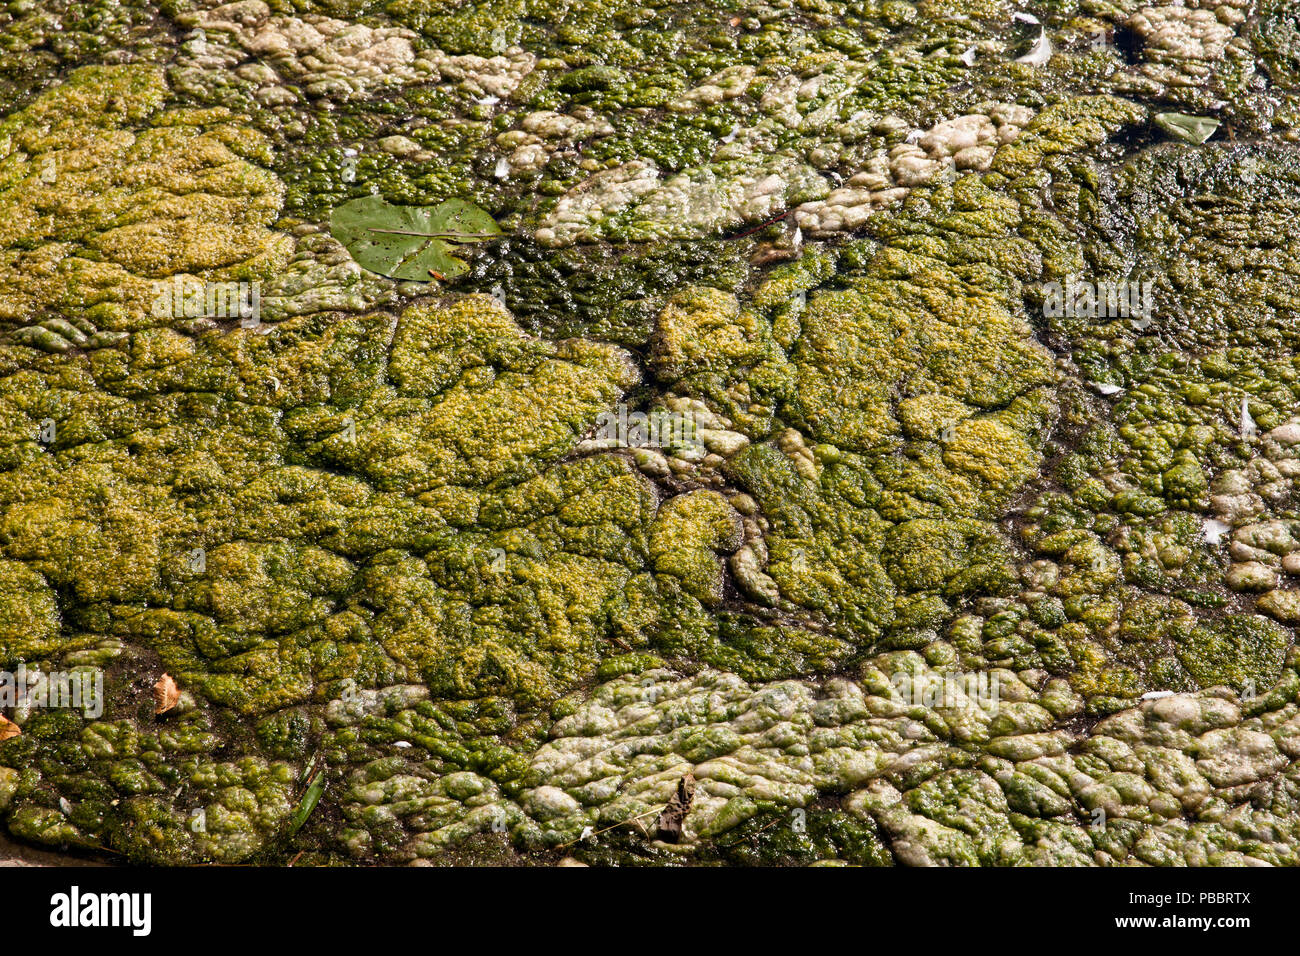 Elodea waterweed on lake Harkort, city of Wetter on the river Ruhr, Germany.  Wasserpest Elodea auf dem Harkortsee bei Wetter an der Ruhr, Deutschland Stock Photo